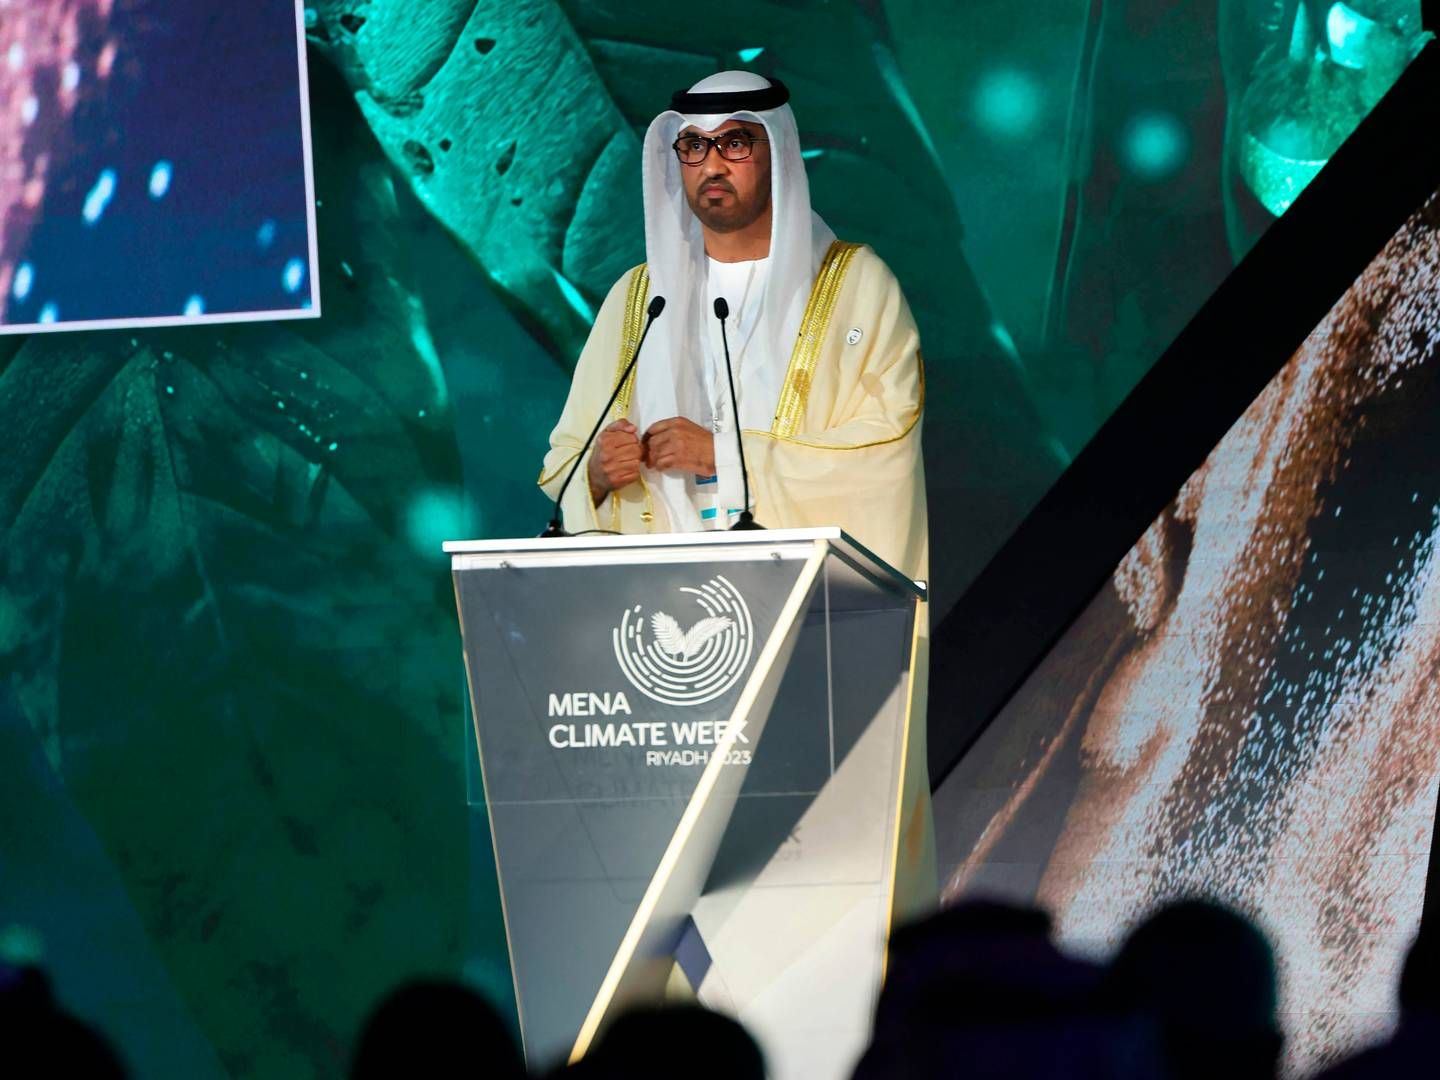 Formanden for det kommende COP 28-klimatopmøde Sultan Al Jaber taler ved åbningen af "Middle East and North Africa (MENA)" klimauge, en FN-organiseret konference, der afholdes i den saudiske hovedstad Riyadh den 8. oktober 2023. | Foto: Fayez Nureldine